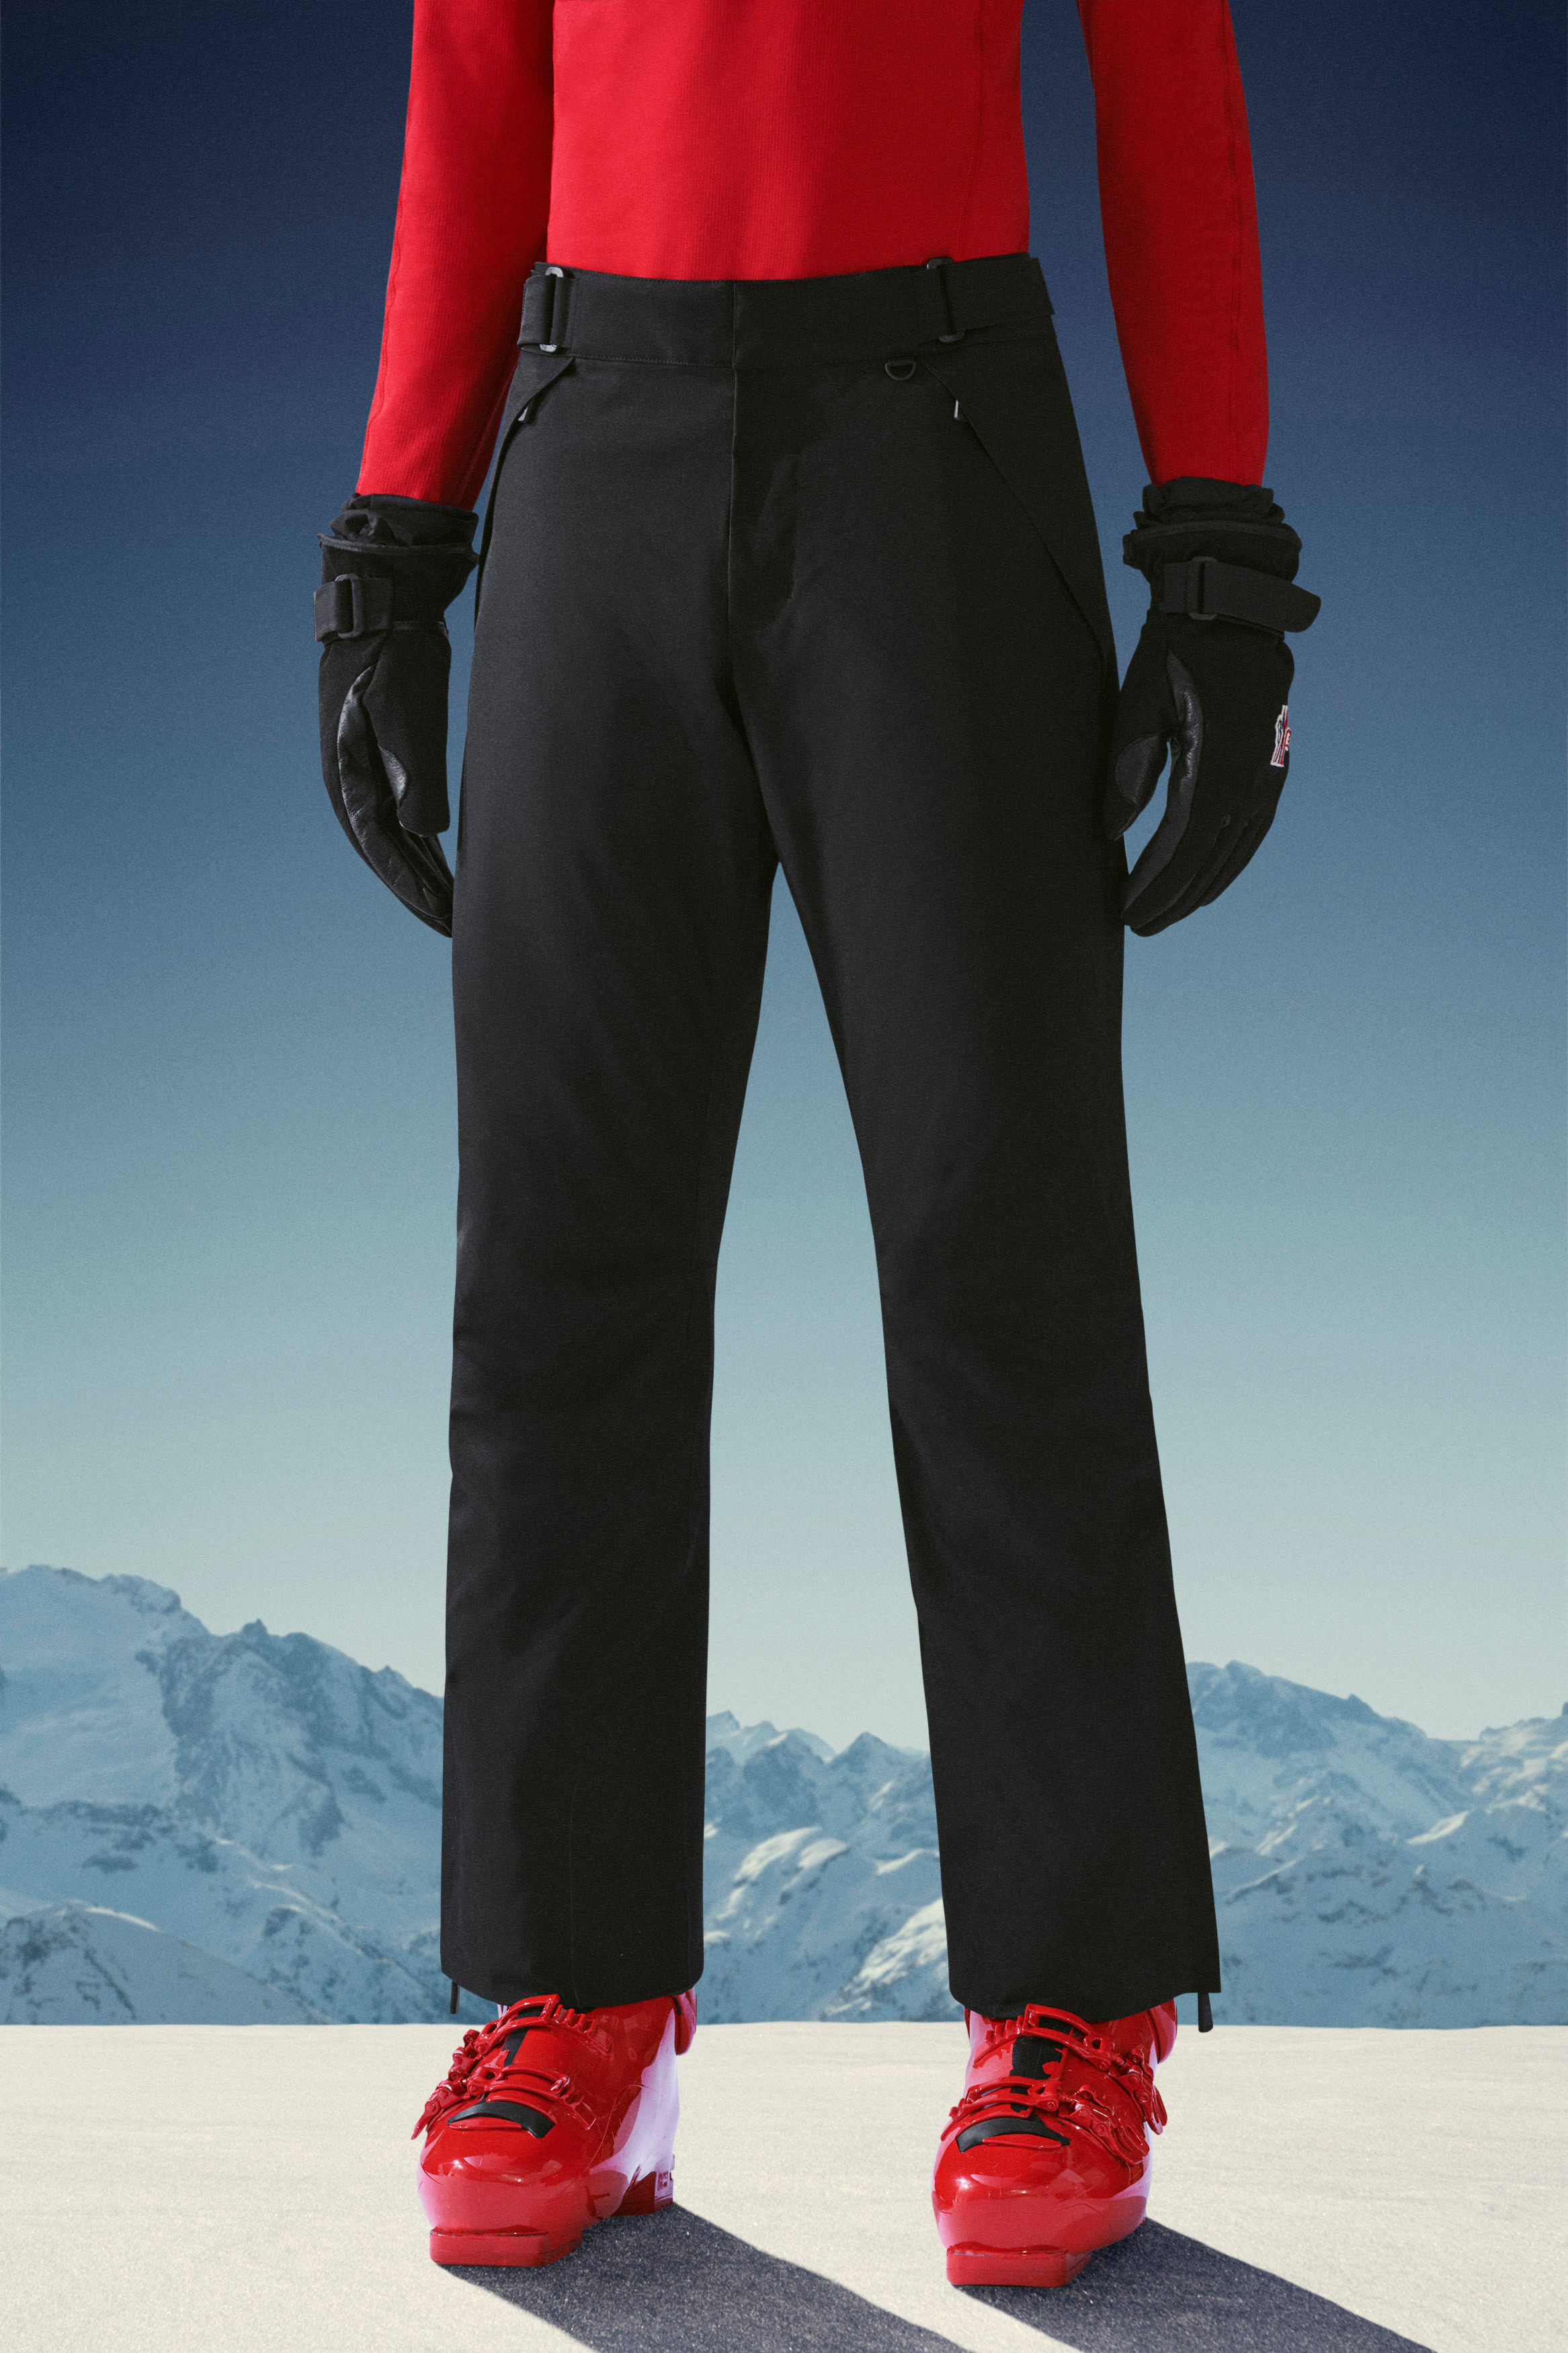 Mens Grenoble Ski Pant Jomashop.com Men Sport & Swimwear Skiwear Ski Suits Size Large 